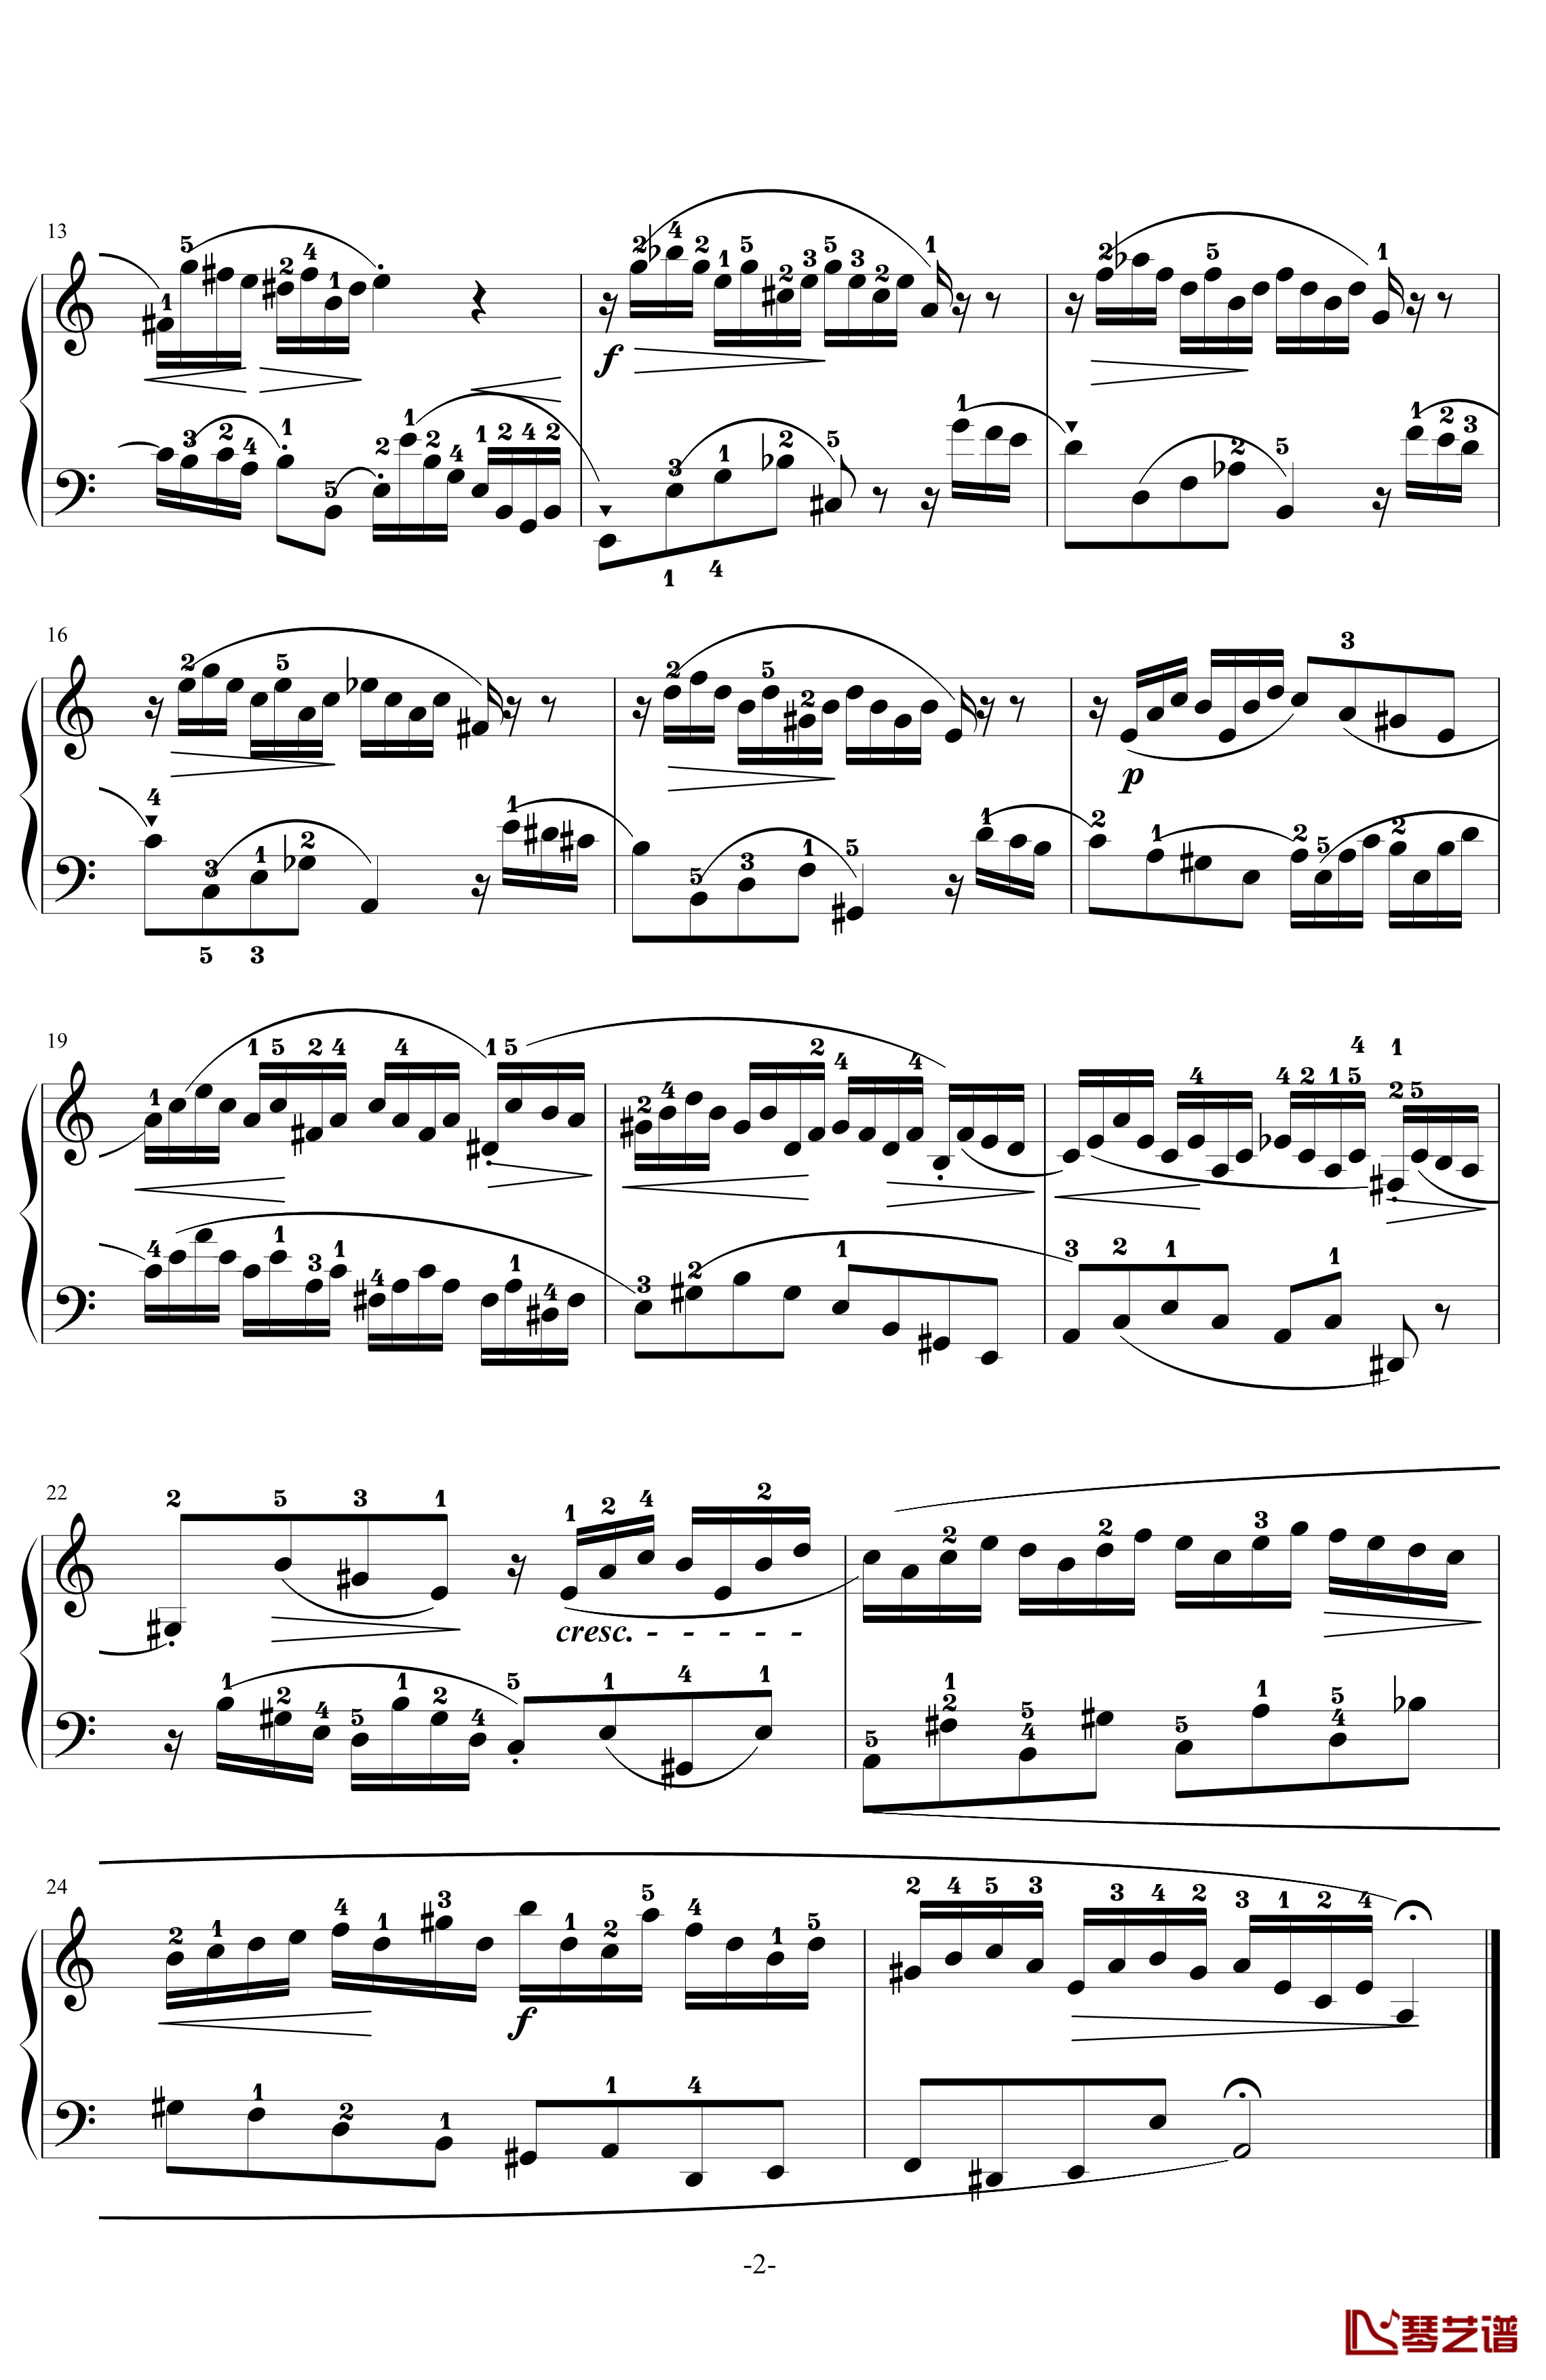 二部創意曲No.13钢琴谱-带指法-巴哈-Bach, Johann Sebastian2